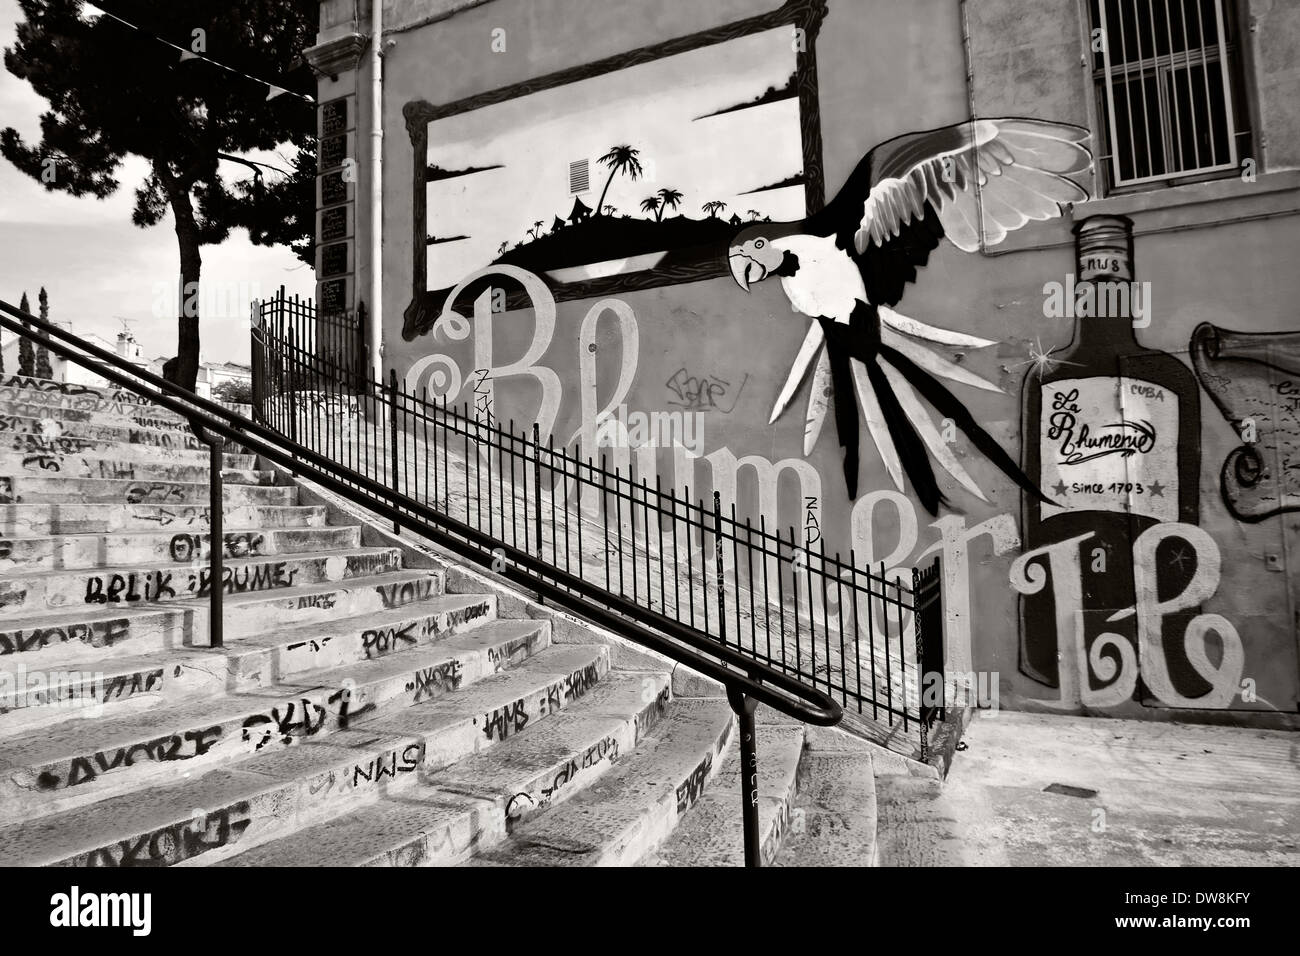 Les murs remplis de graffitis sur les étapes menant à cours Julien de Marseille, France, image, perroquet photogaph noir & blanc Banque D'Images